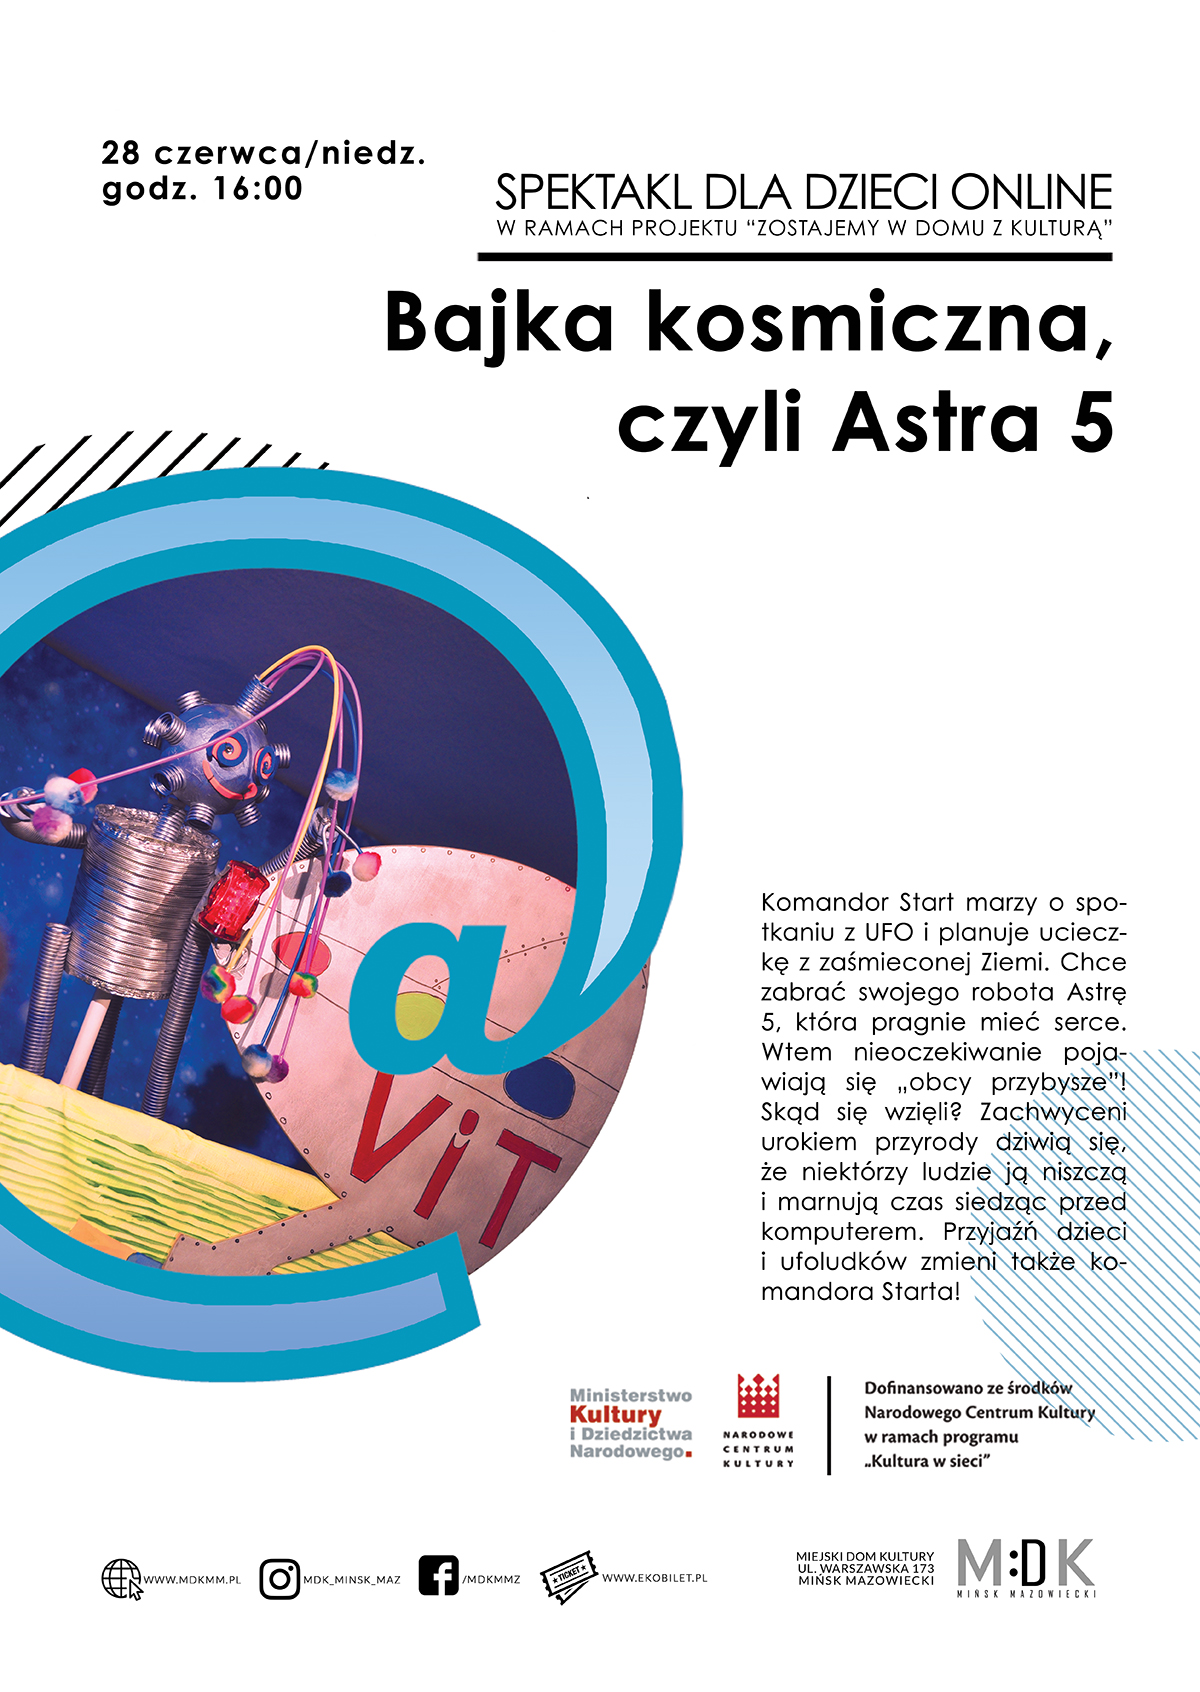 Bajka kosmiczna, czyli Astra 5 - spektakl dla dzieci on line